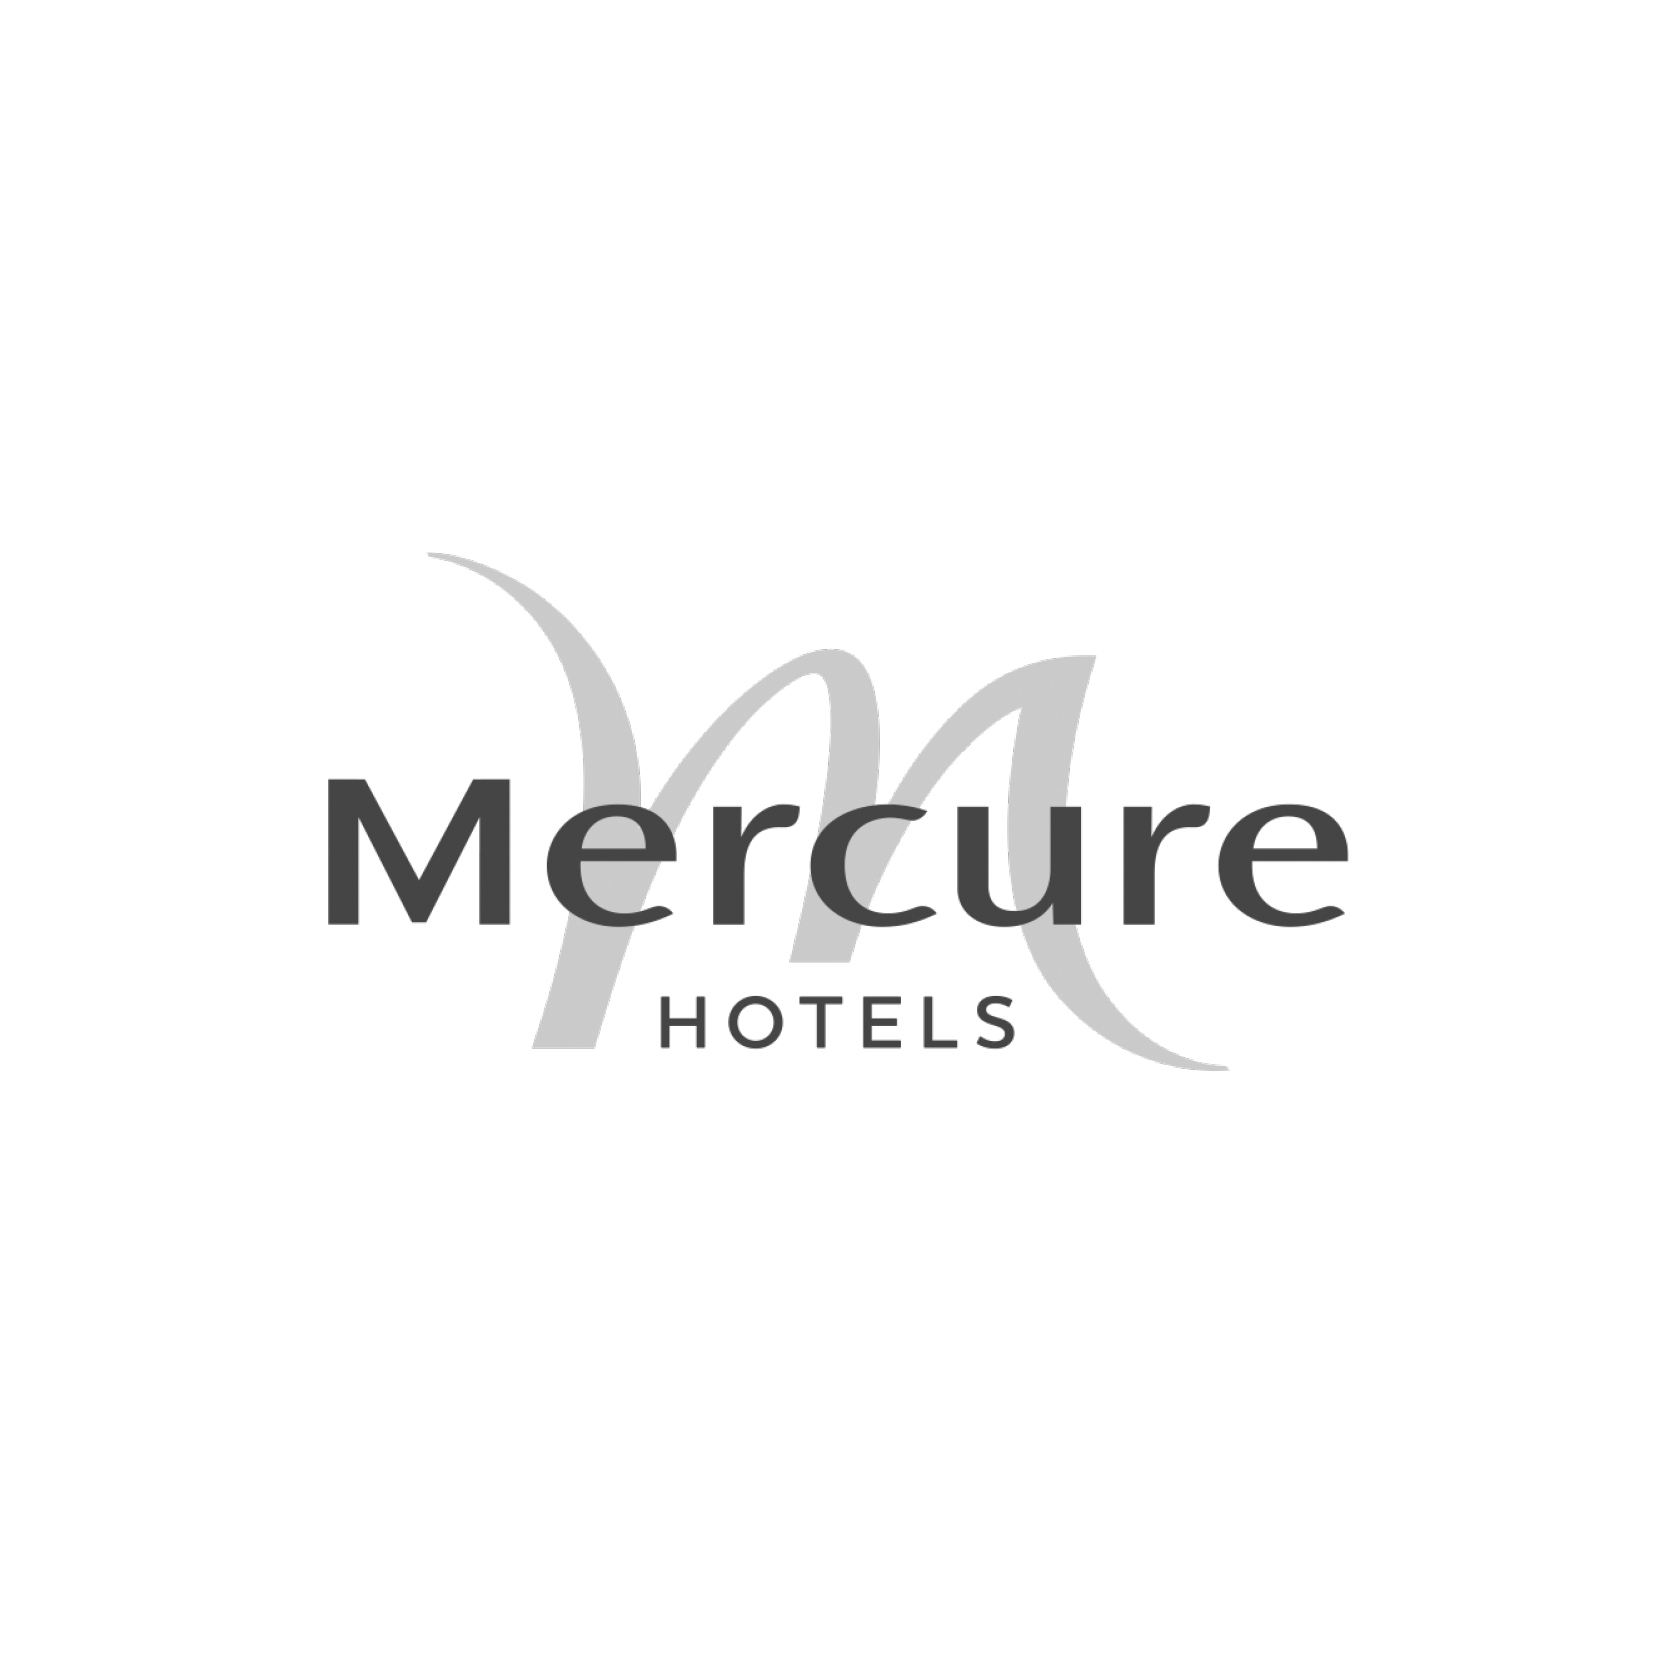 mercure hotel.jpg